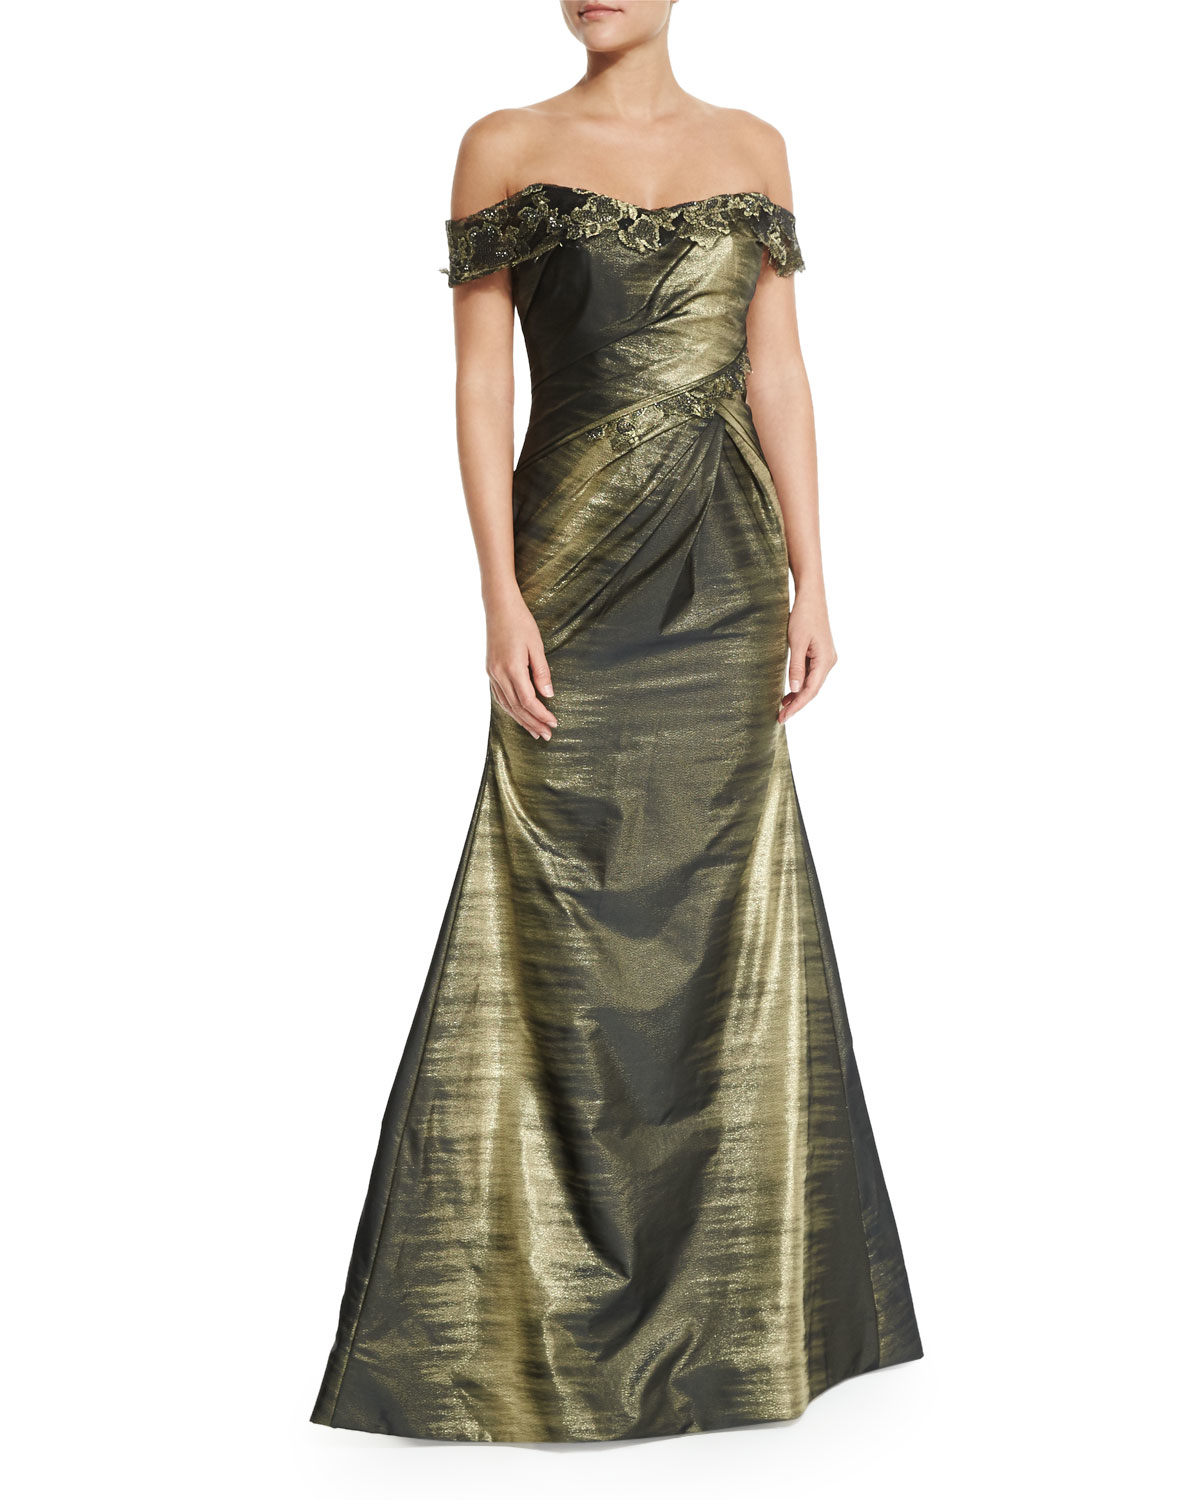 Rene ruiz Off-the-shoulder Ombre Gown in Metallic | Lyst